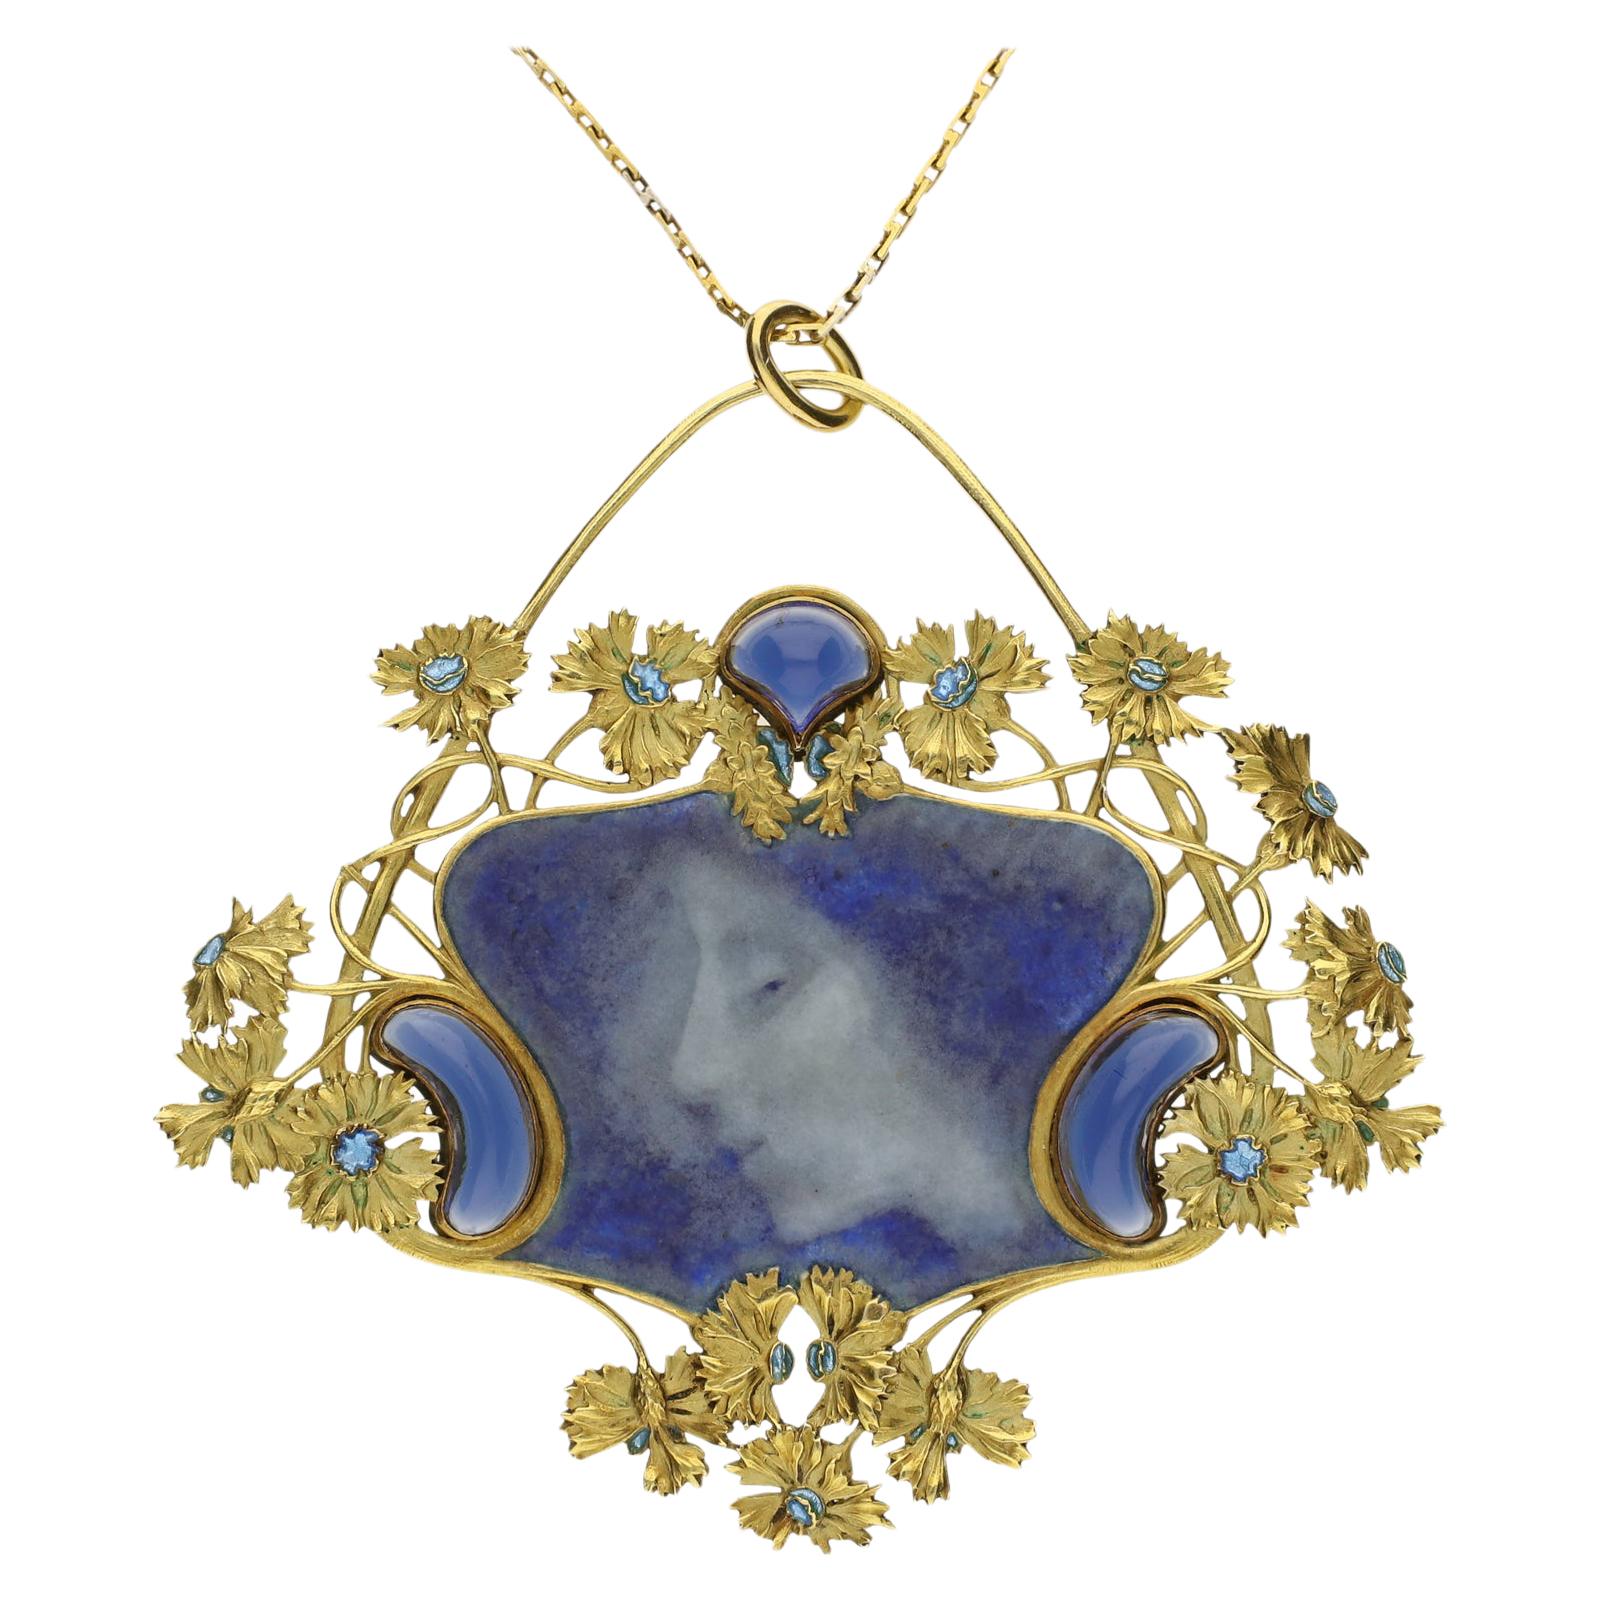 René Lalique "Pate sur Pate" Enamel, Gold and Diamond Pendant